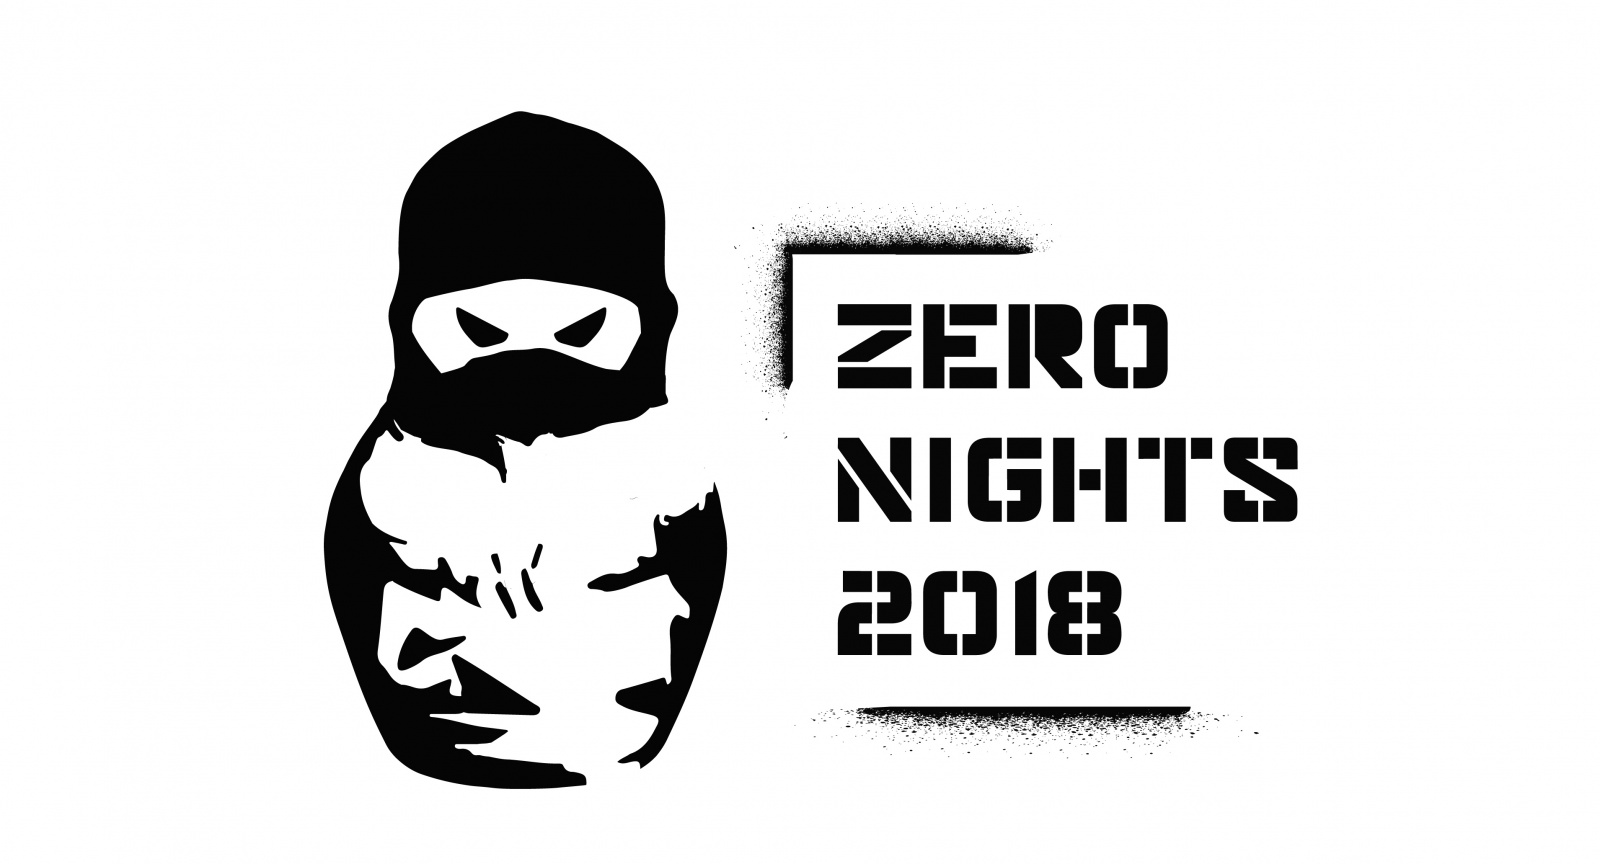 ZeroNights 2018. Reload - 1